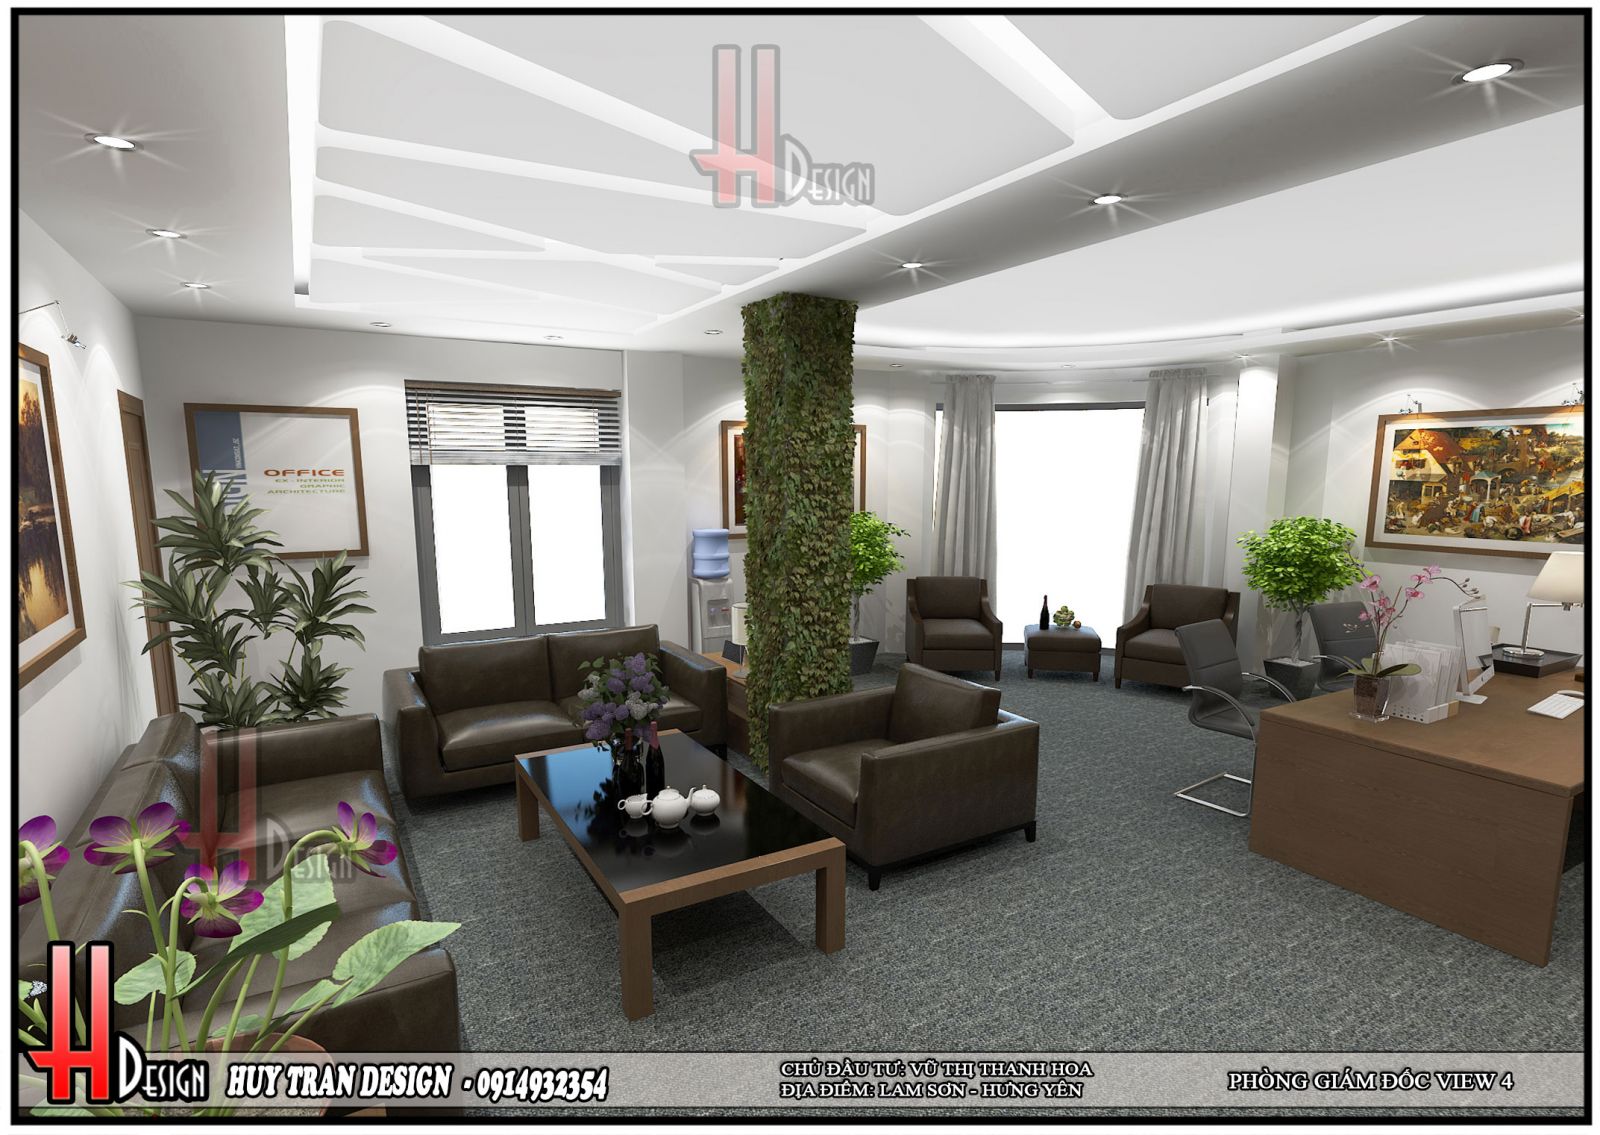 Phối cảnh thiết kế nội thất hiện đại văn phòng làm việc 5 tầng - Huytrandesign tư vấn, thiết kế, thi công, sửa chữa nhà cửa, biệt thự, văn phòng, cơ sở kinh doanh-v4